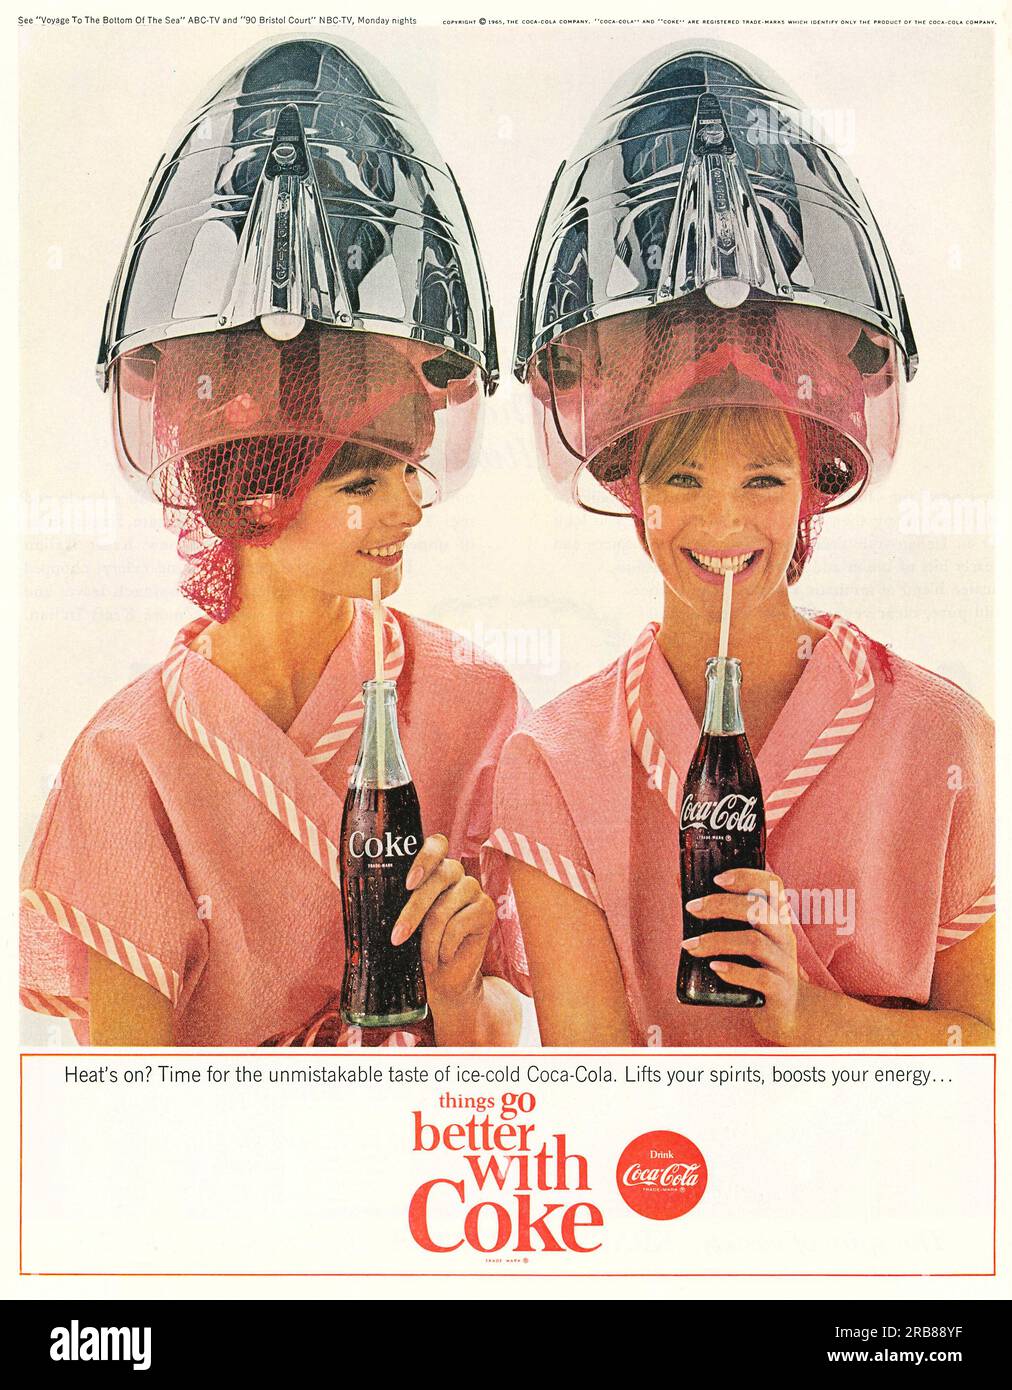 Publicité Coca Cola, femmes dans salon de coiffure avec publicité de tasses de chaleur dans un magazine Journal, 1965. Les choses s'améliorent avec Coke Banque D'Images